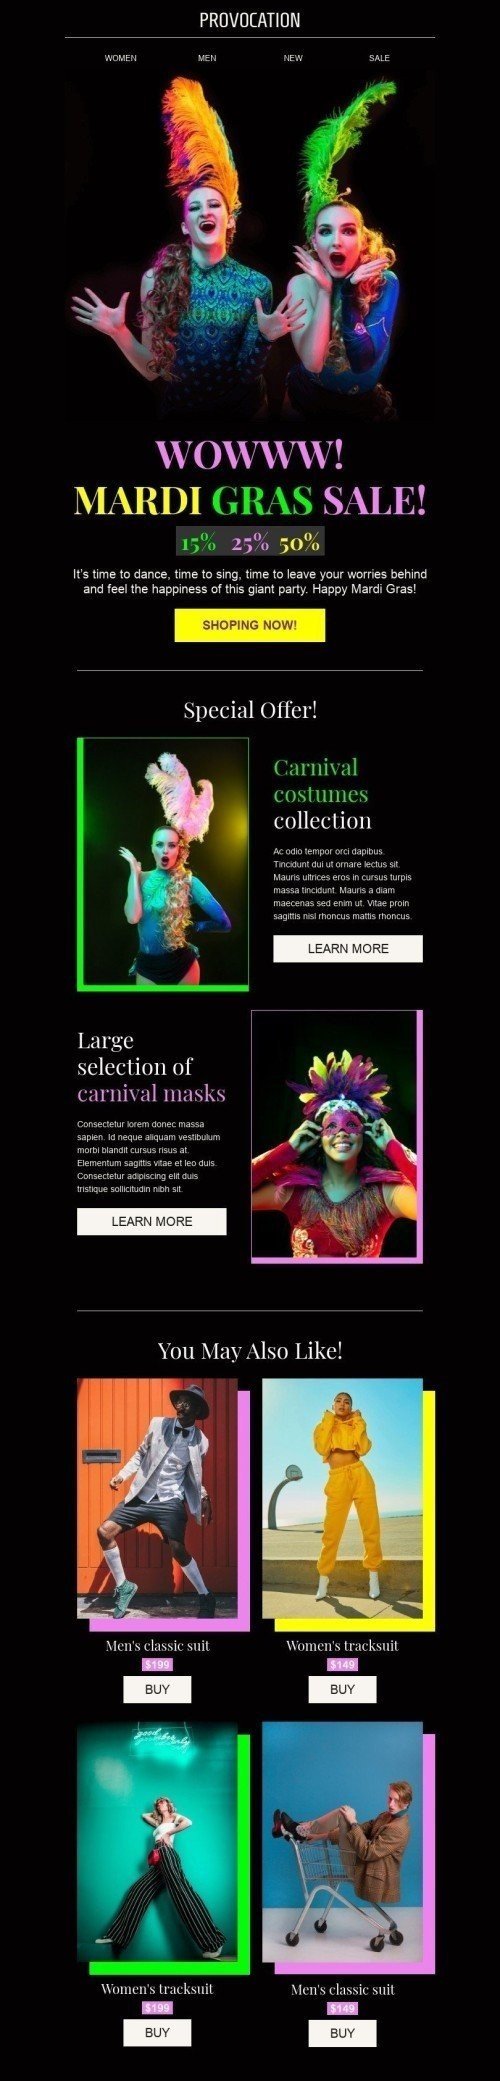 Modelo de E-mail de «Promoção Mardi Gras» de Carnaval para a indústria de Moda Visualização de dispositivo móvel